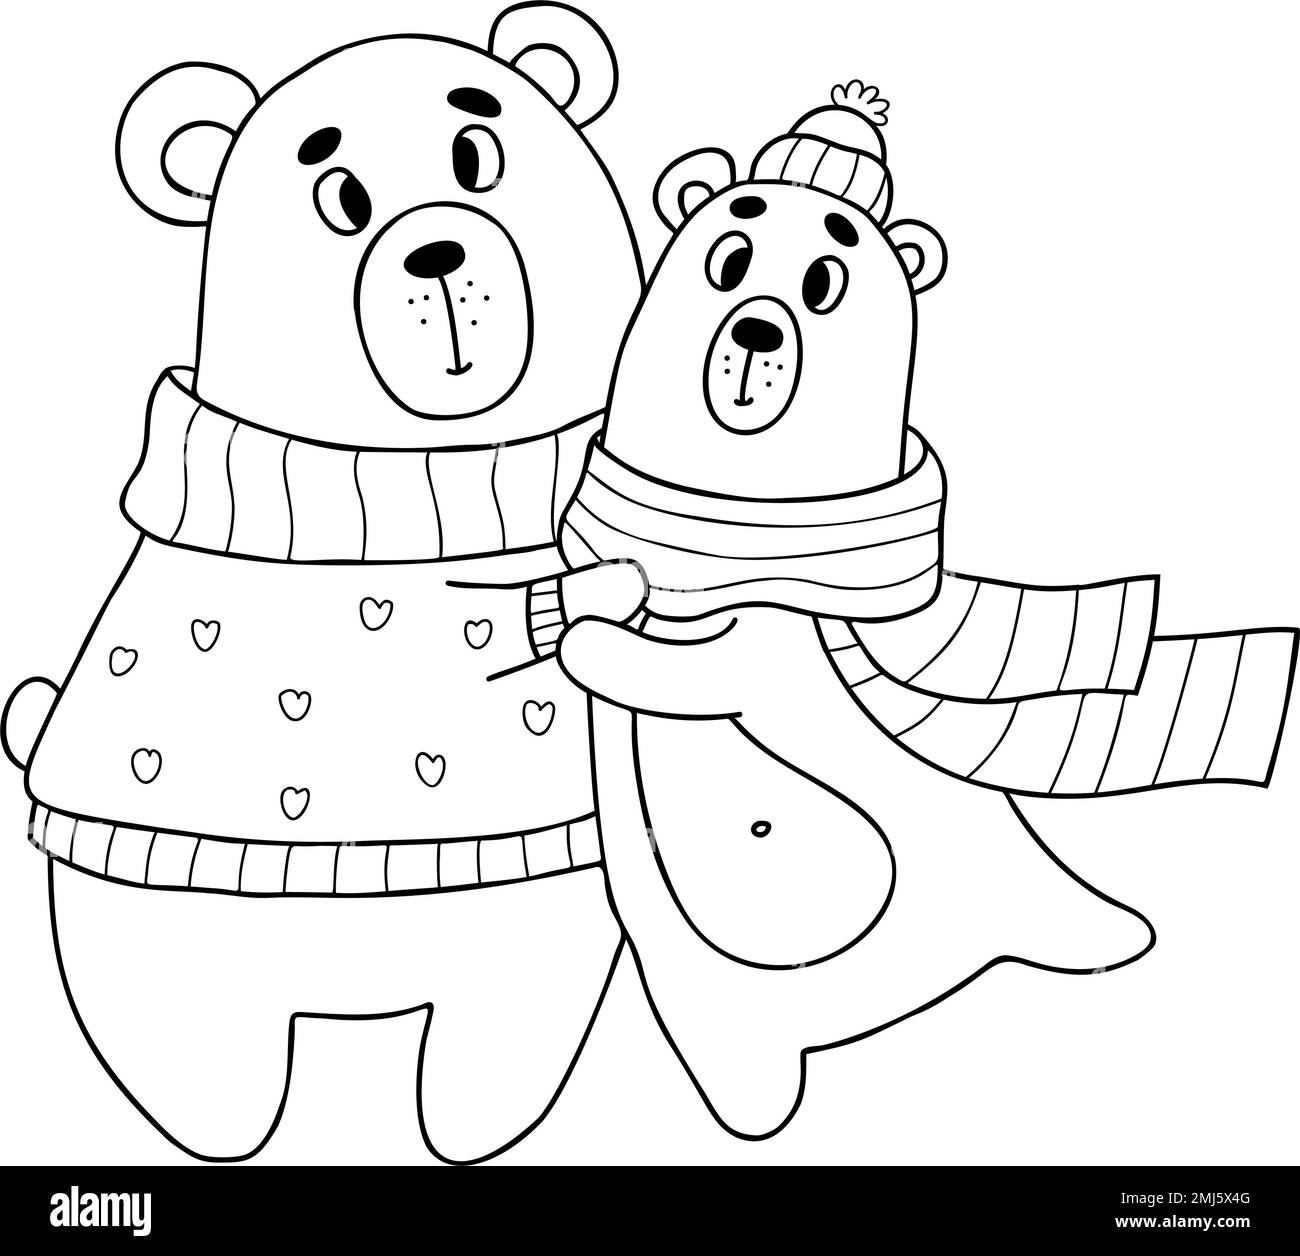 Süße Bären in Winterkleidung. Vektorgrafik im Kritzelstil. Umriss für Design, Dekor, Valentinskarten, Druck Stock Vektor